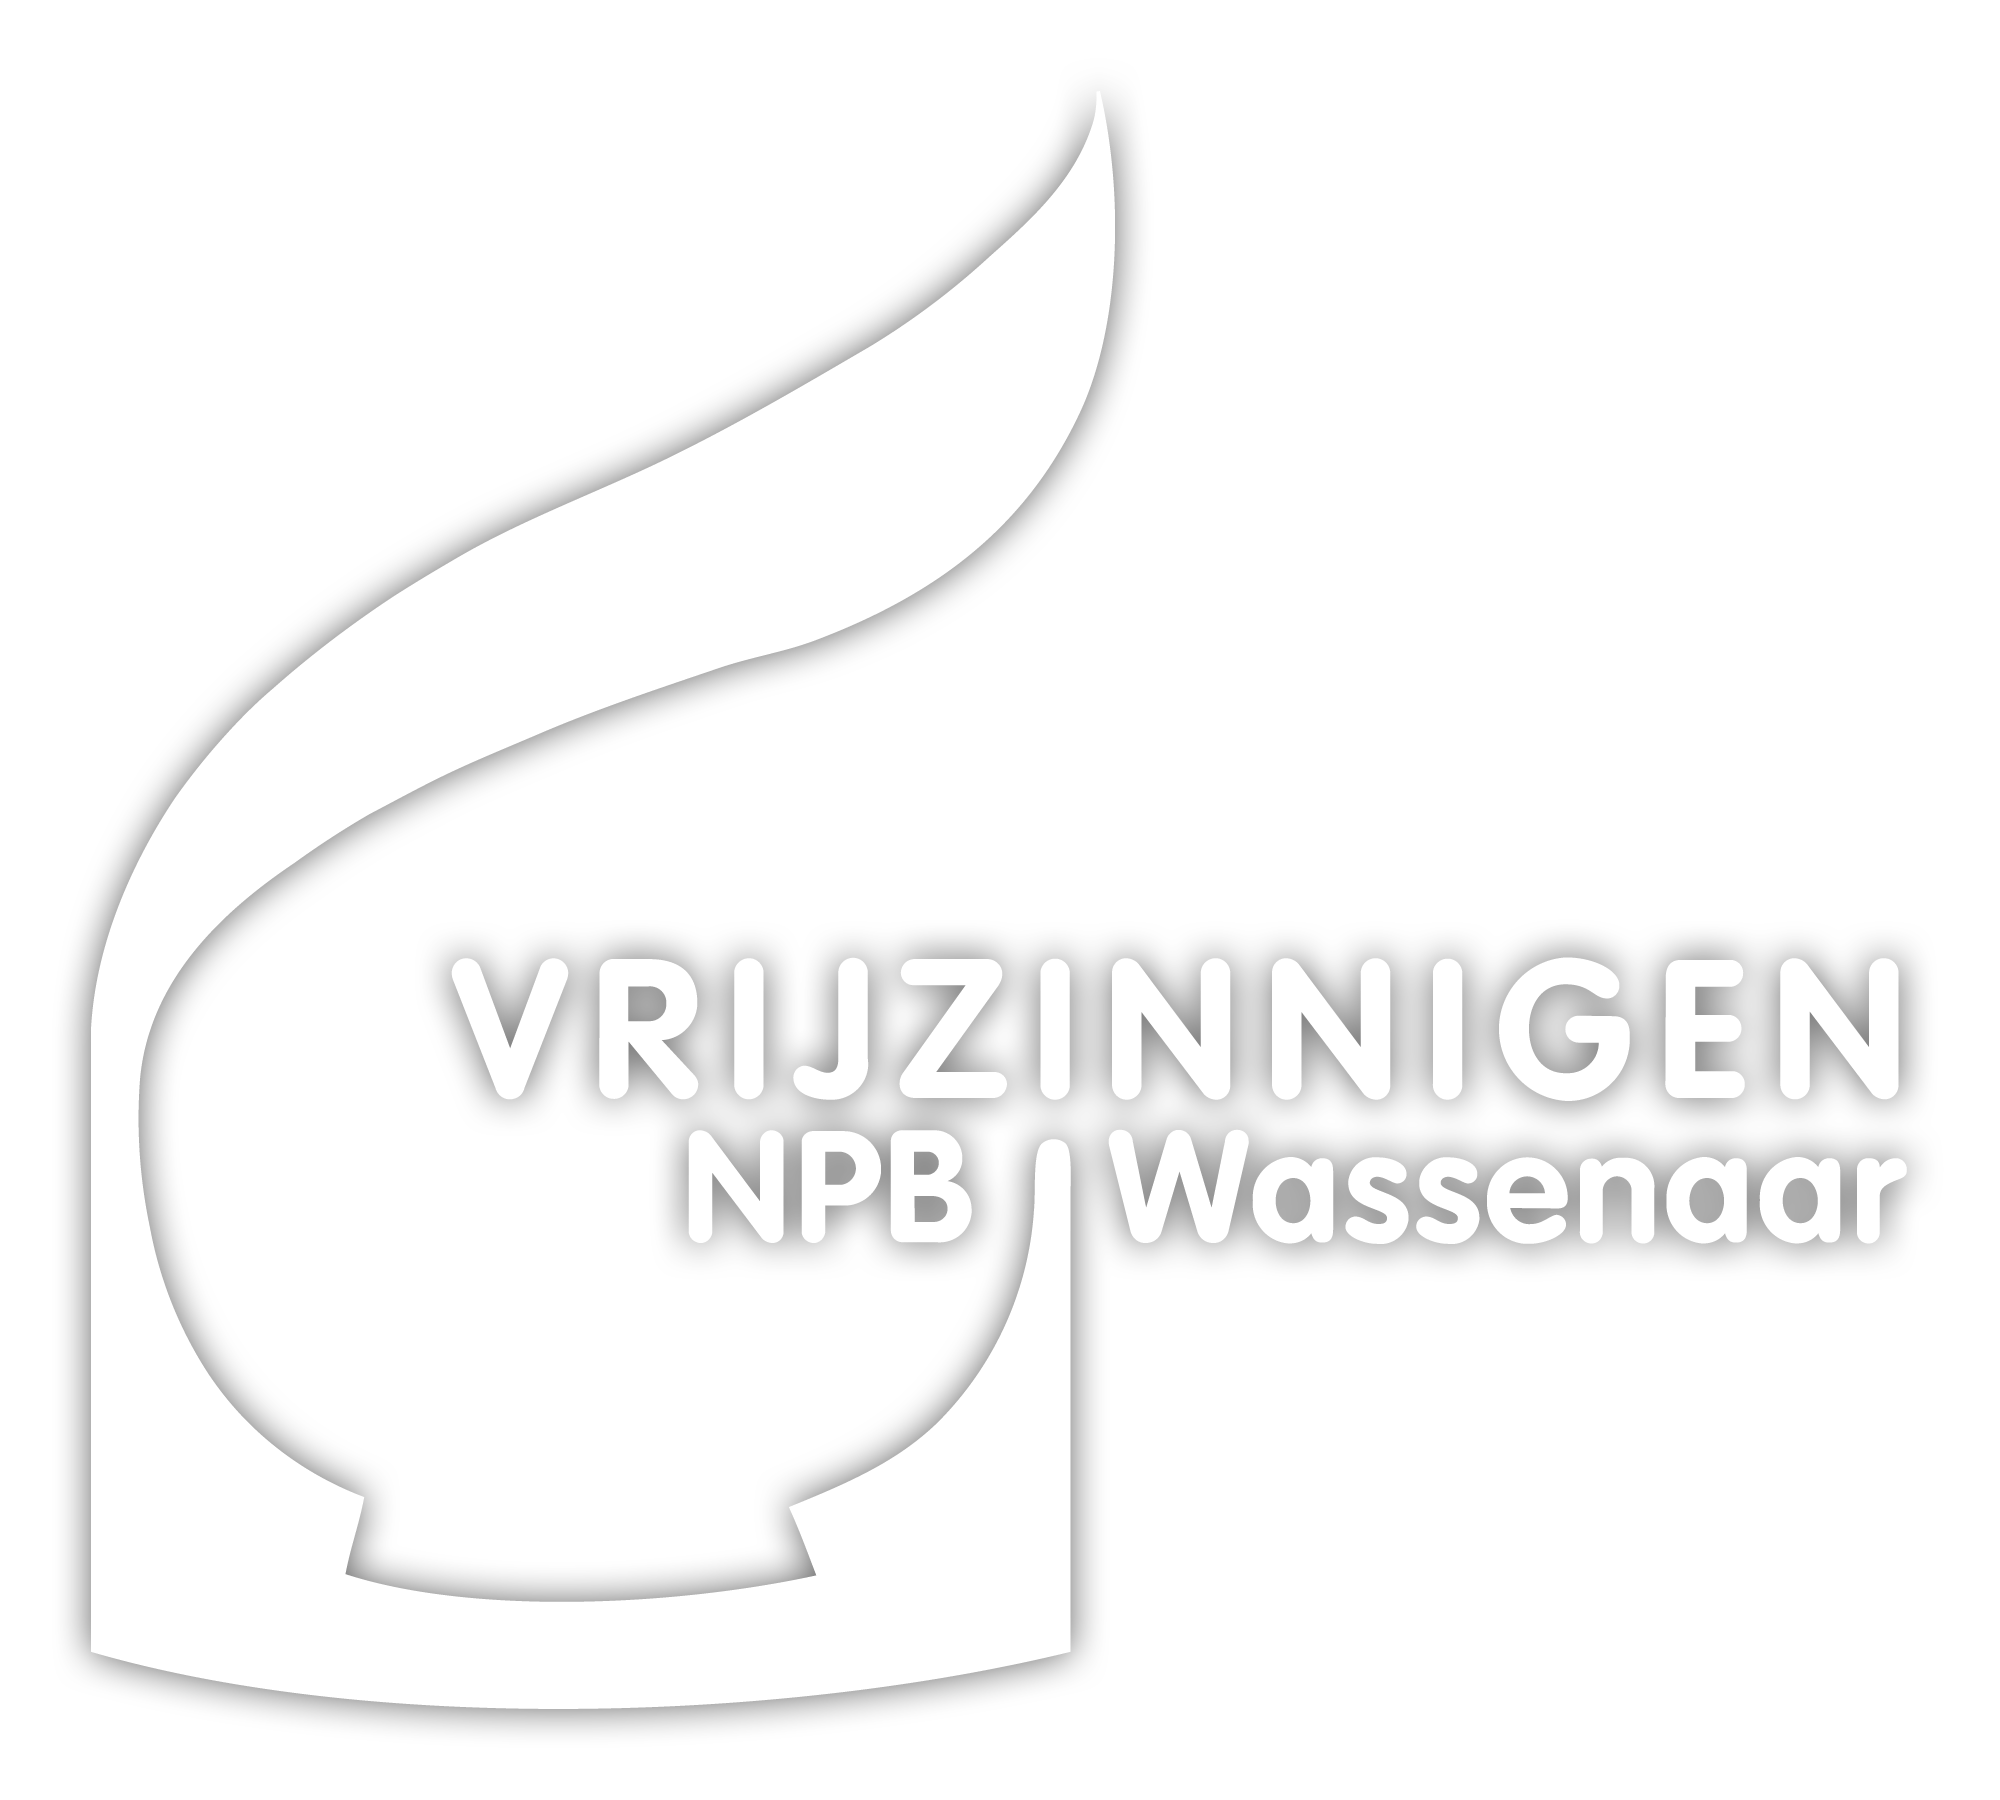 De Vrijzinnigen NPB Wassenaar